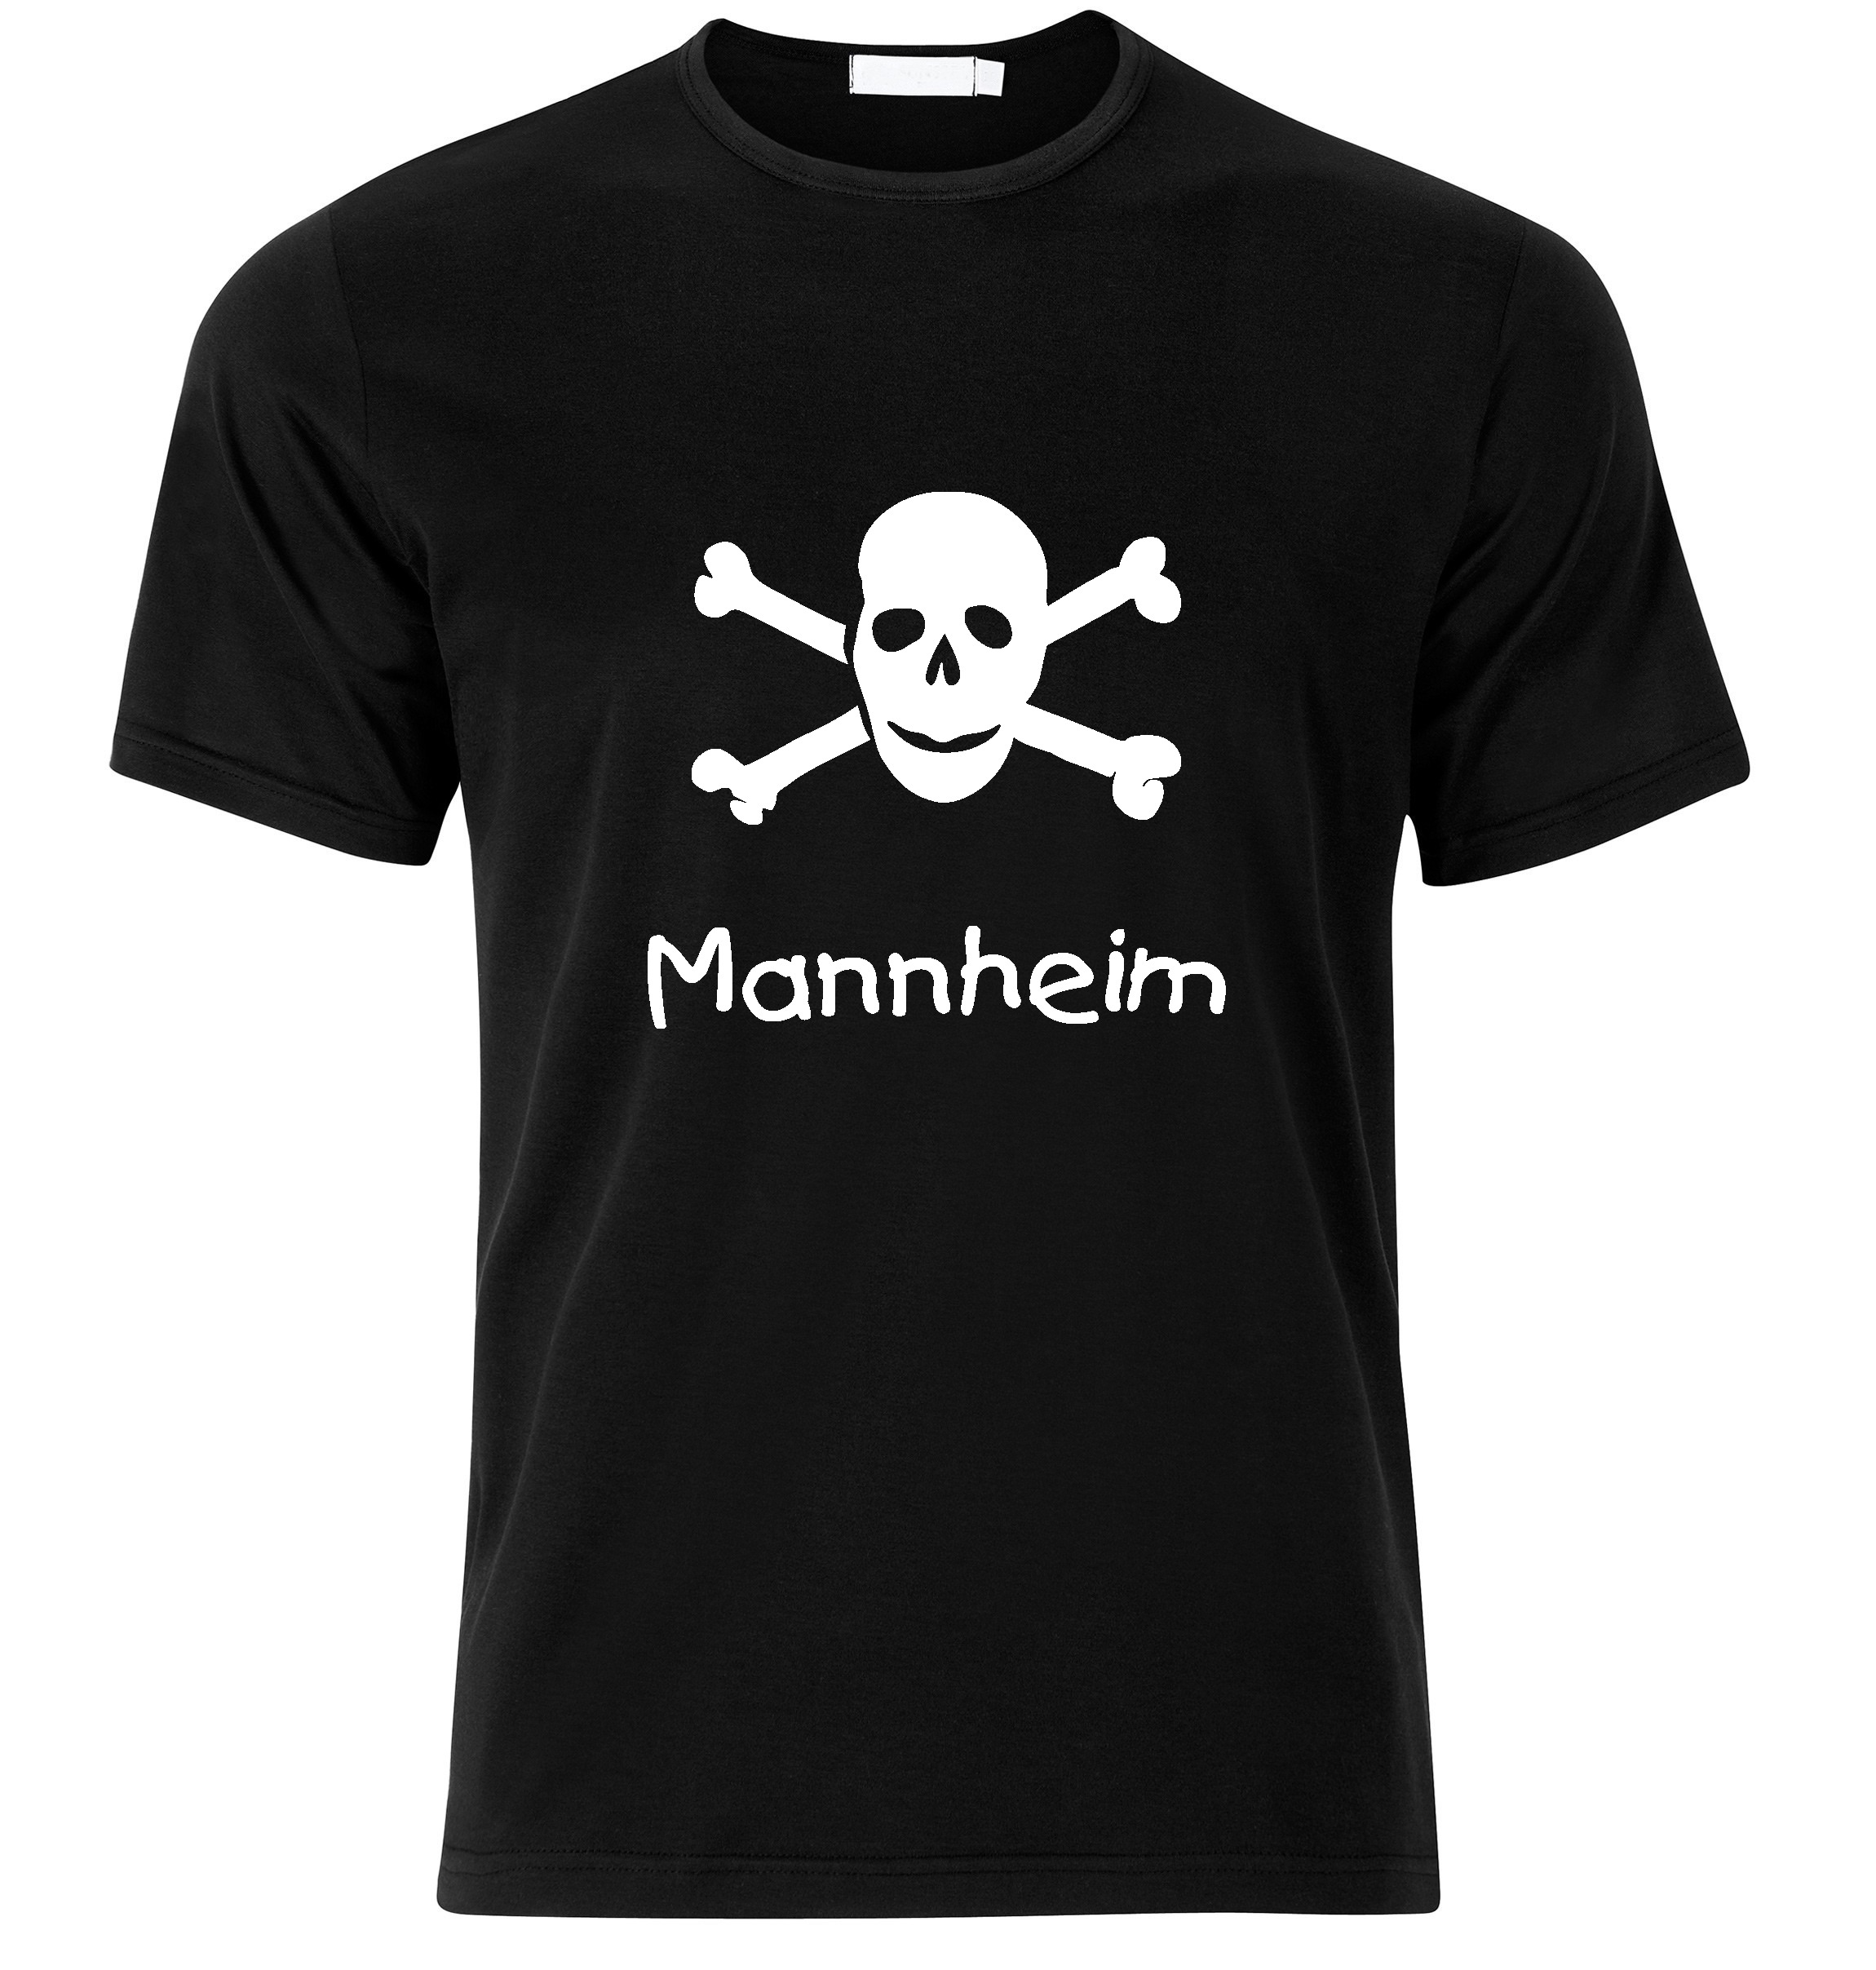 T-Shirt Mannheim Jolly Roger, Totenkopf